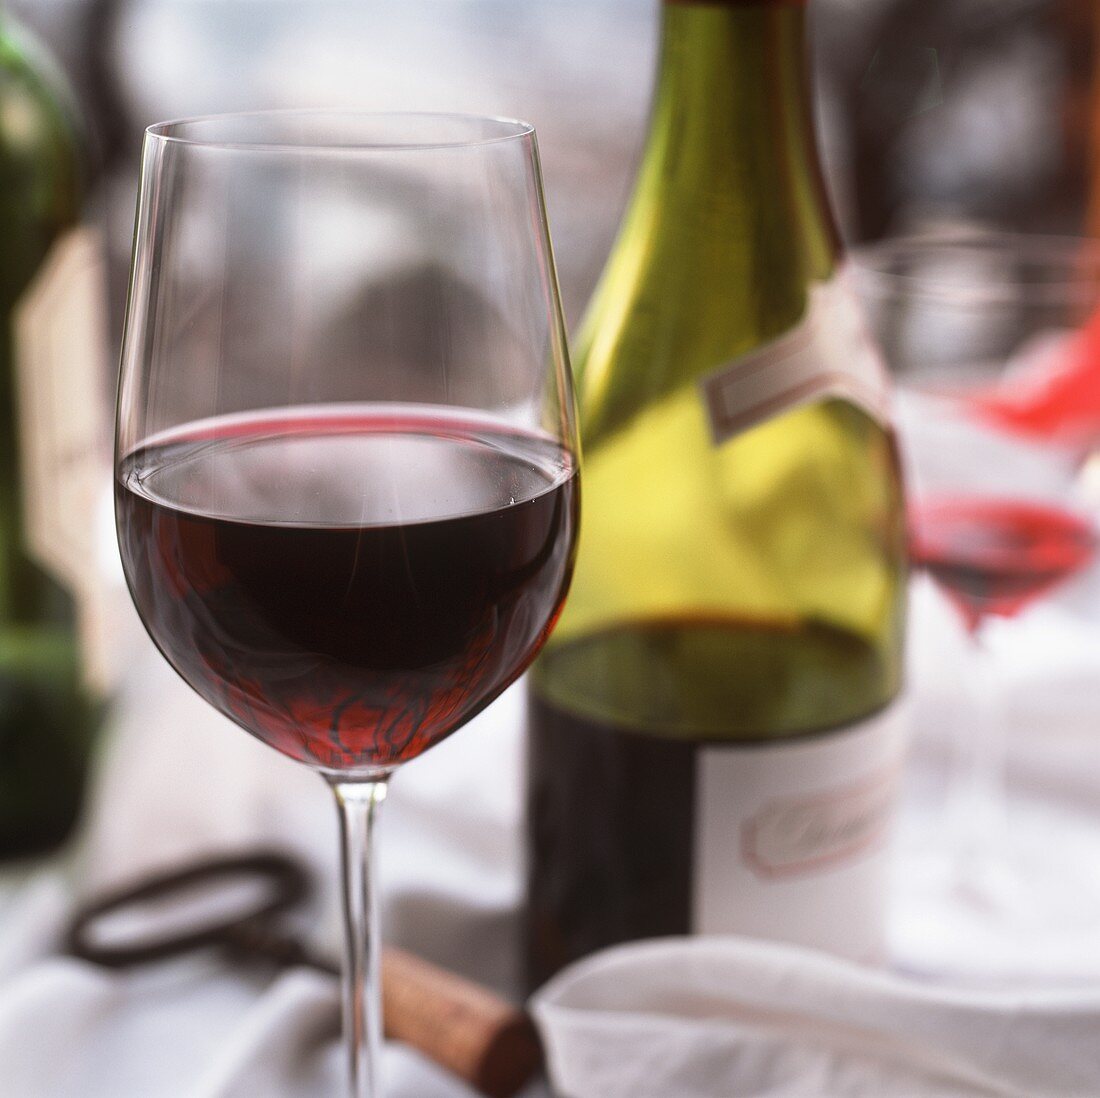 Rotweinglas vor einer halbvollen Flasche Rotwein auf Tisch